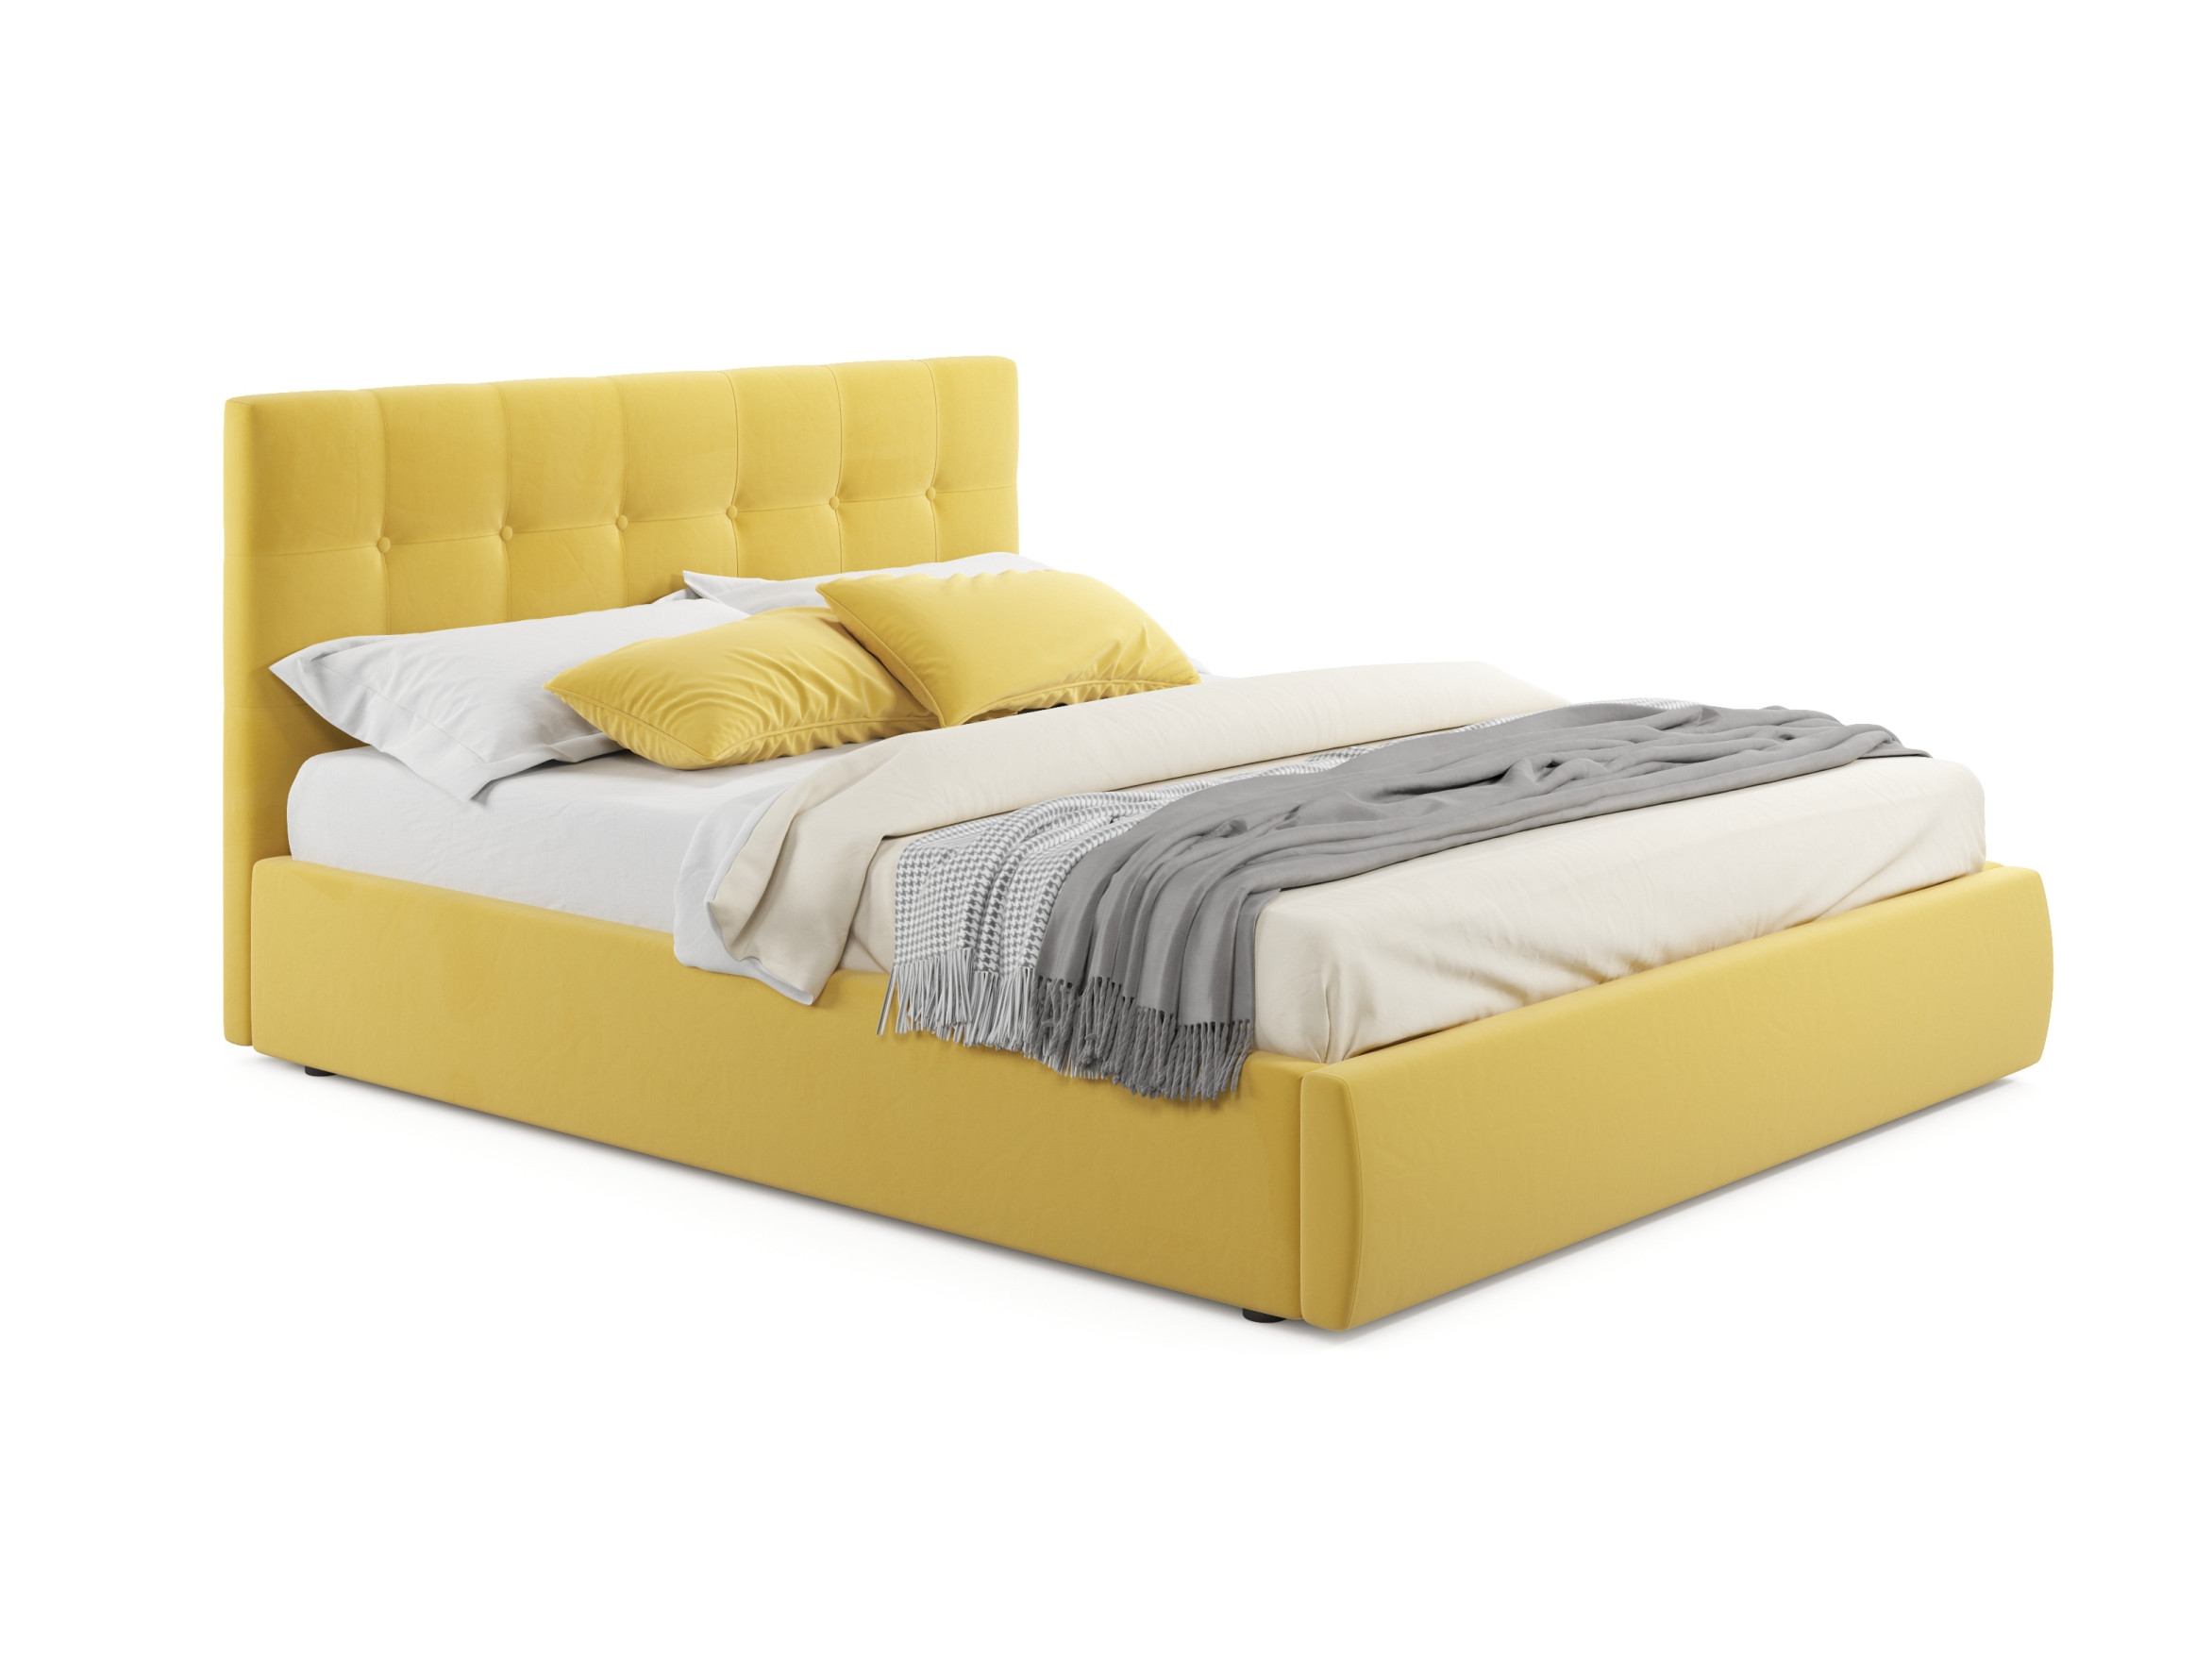 двуспальный комплект для сна амели 1800 с подъемным меха Комплект для сна Selesta 1800 желтый с подъемным механизмом желтый, Желтый, Велюр, ДСП